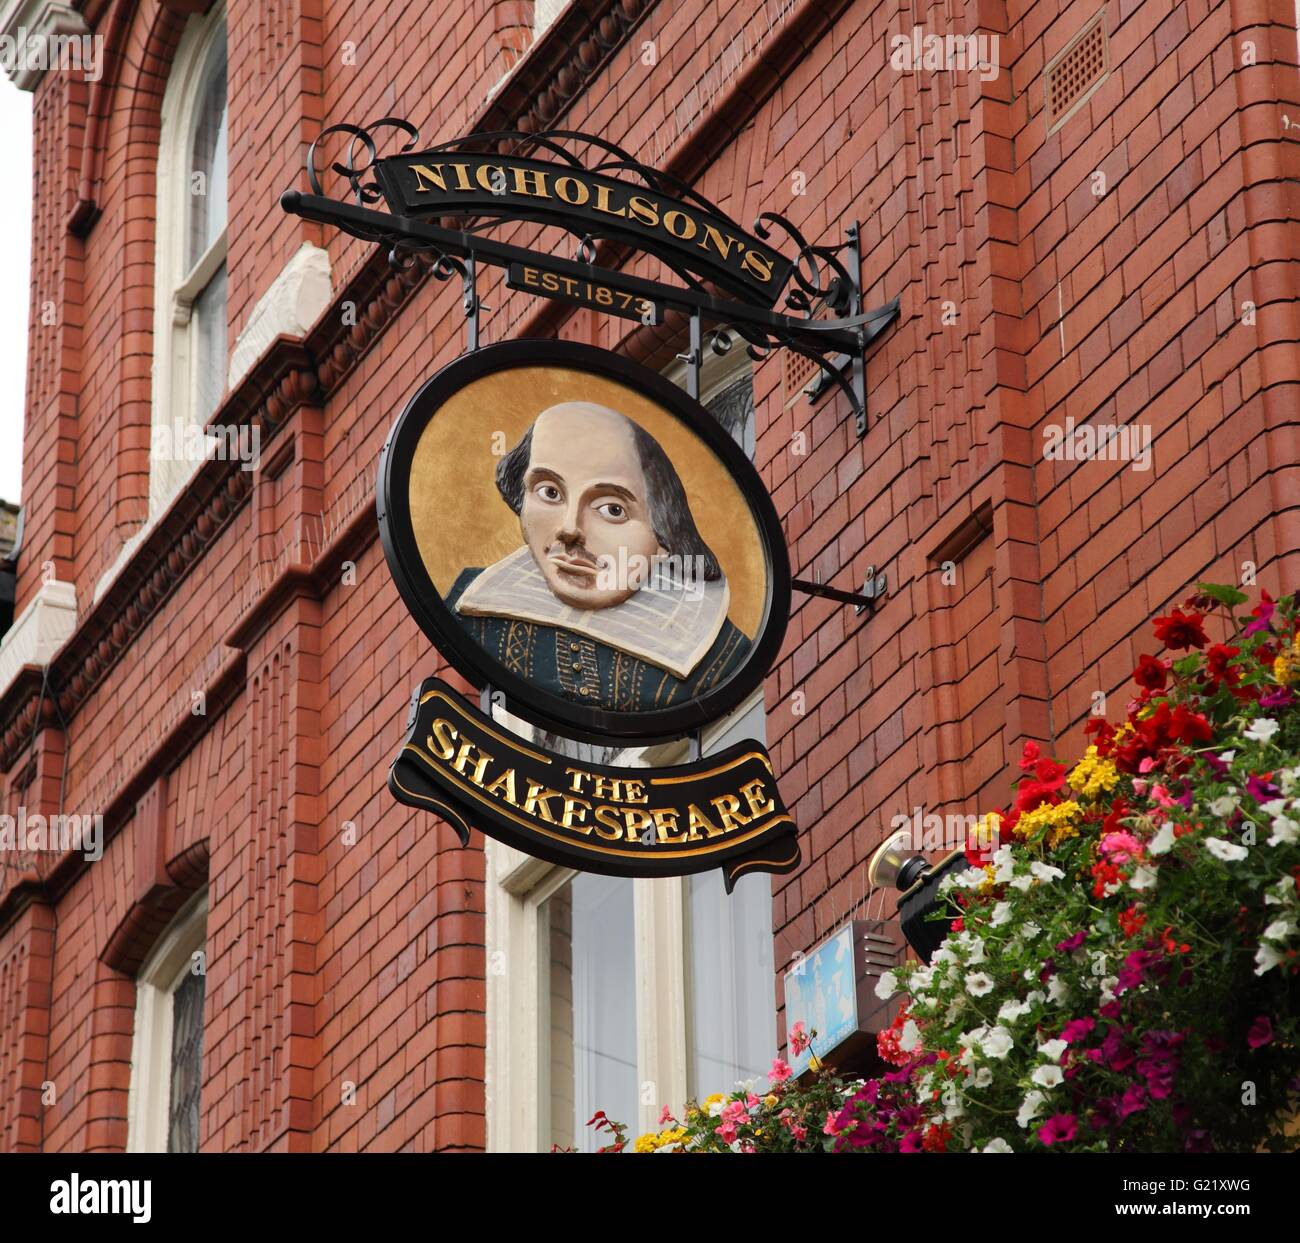 The Shakespeare inn, a pub on Summer Row, Birmingham Stock Photo